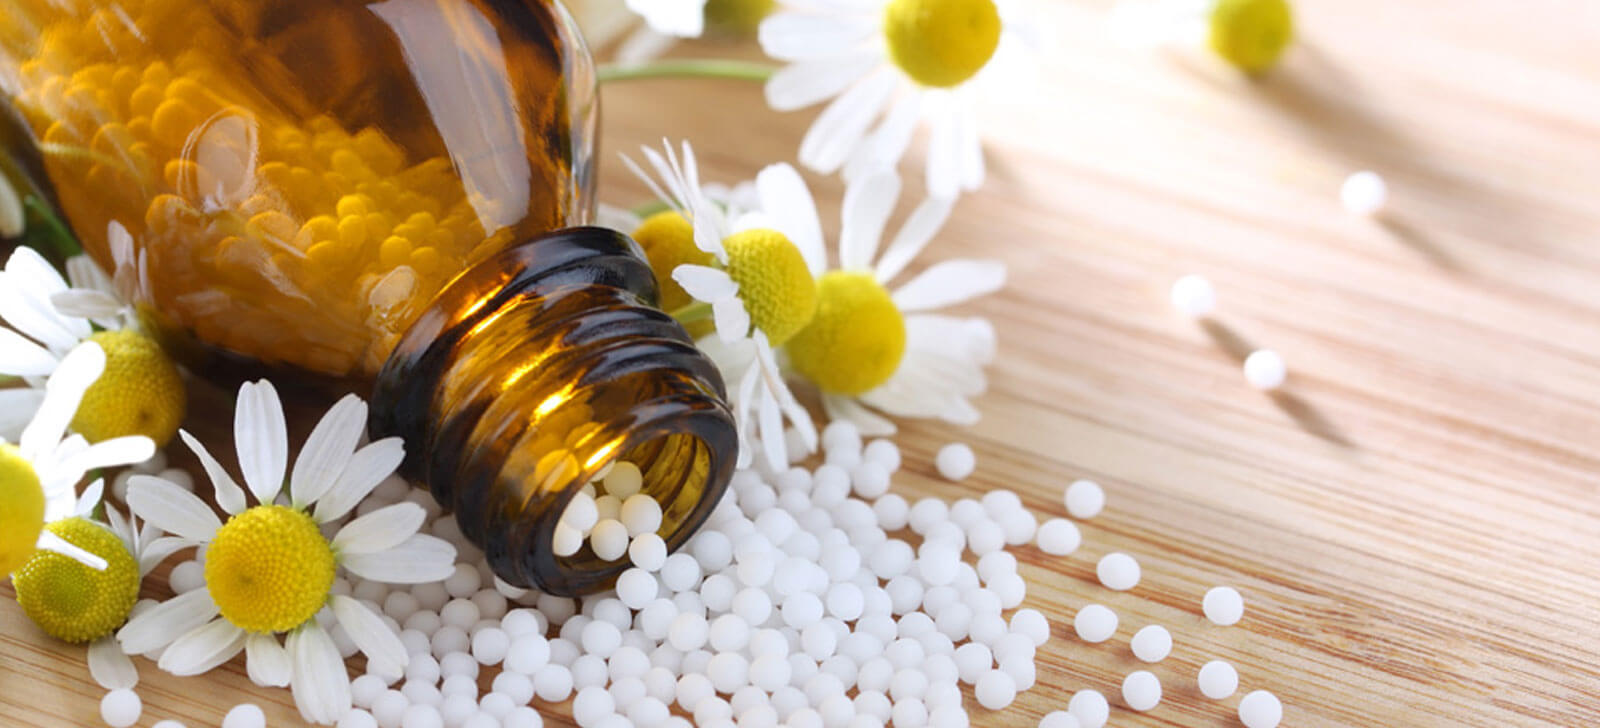 Homeopatia saiba o que é, como funciona e para que serve